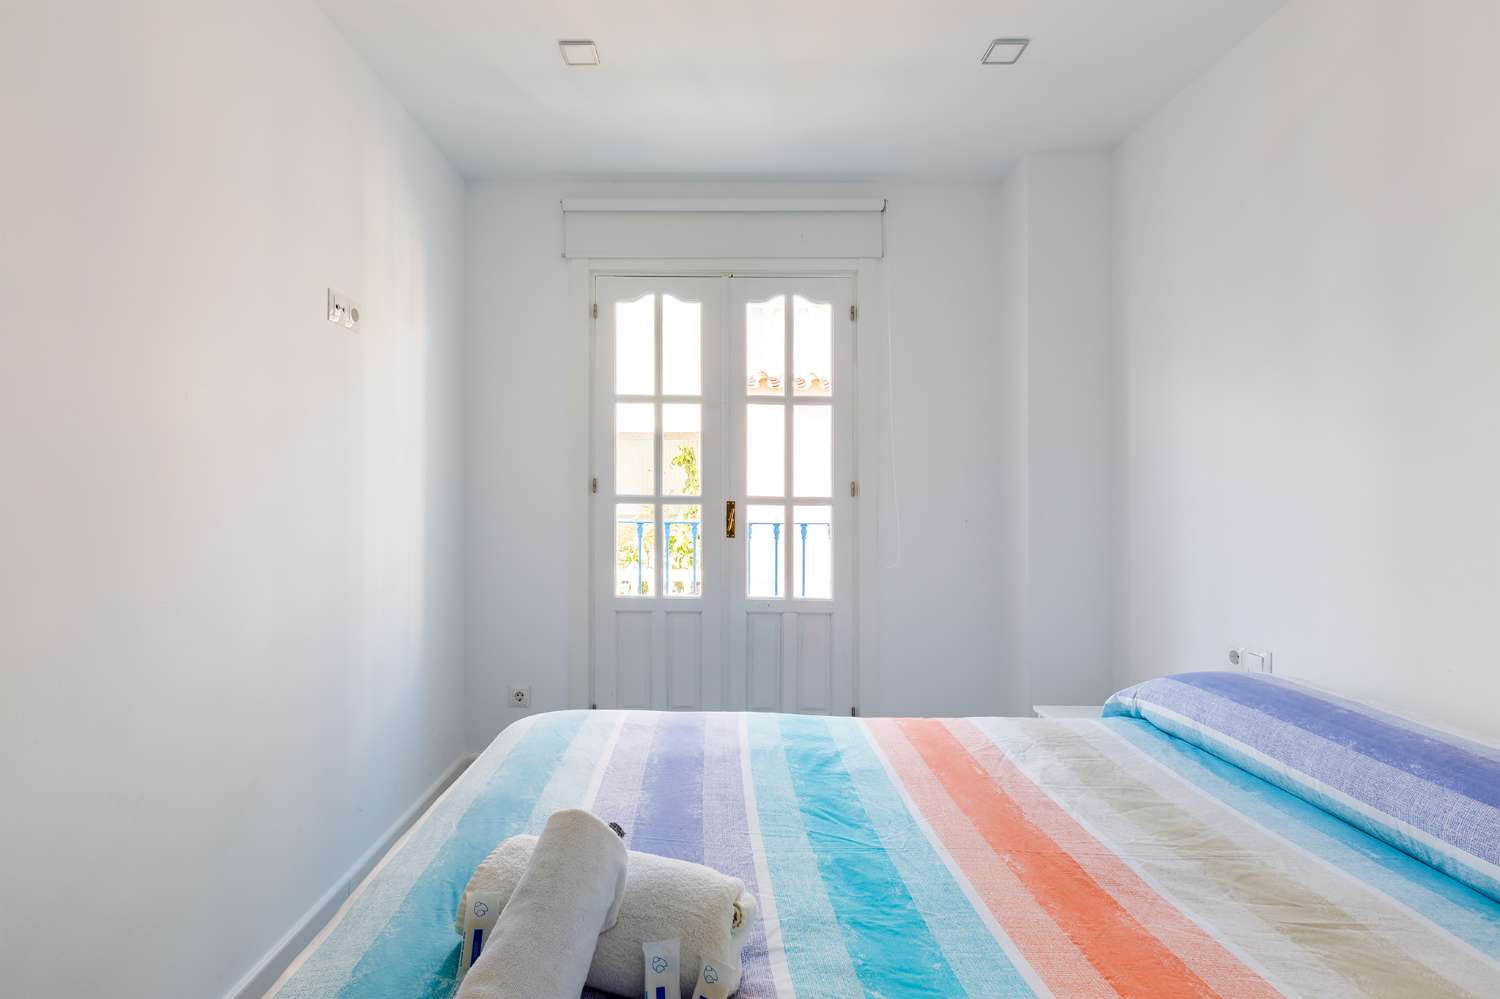 Lägenhet med två sovrum i centrum av Torre del Mar, tillgänglig för vintern